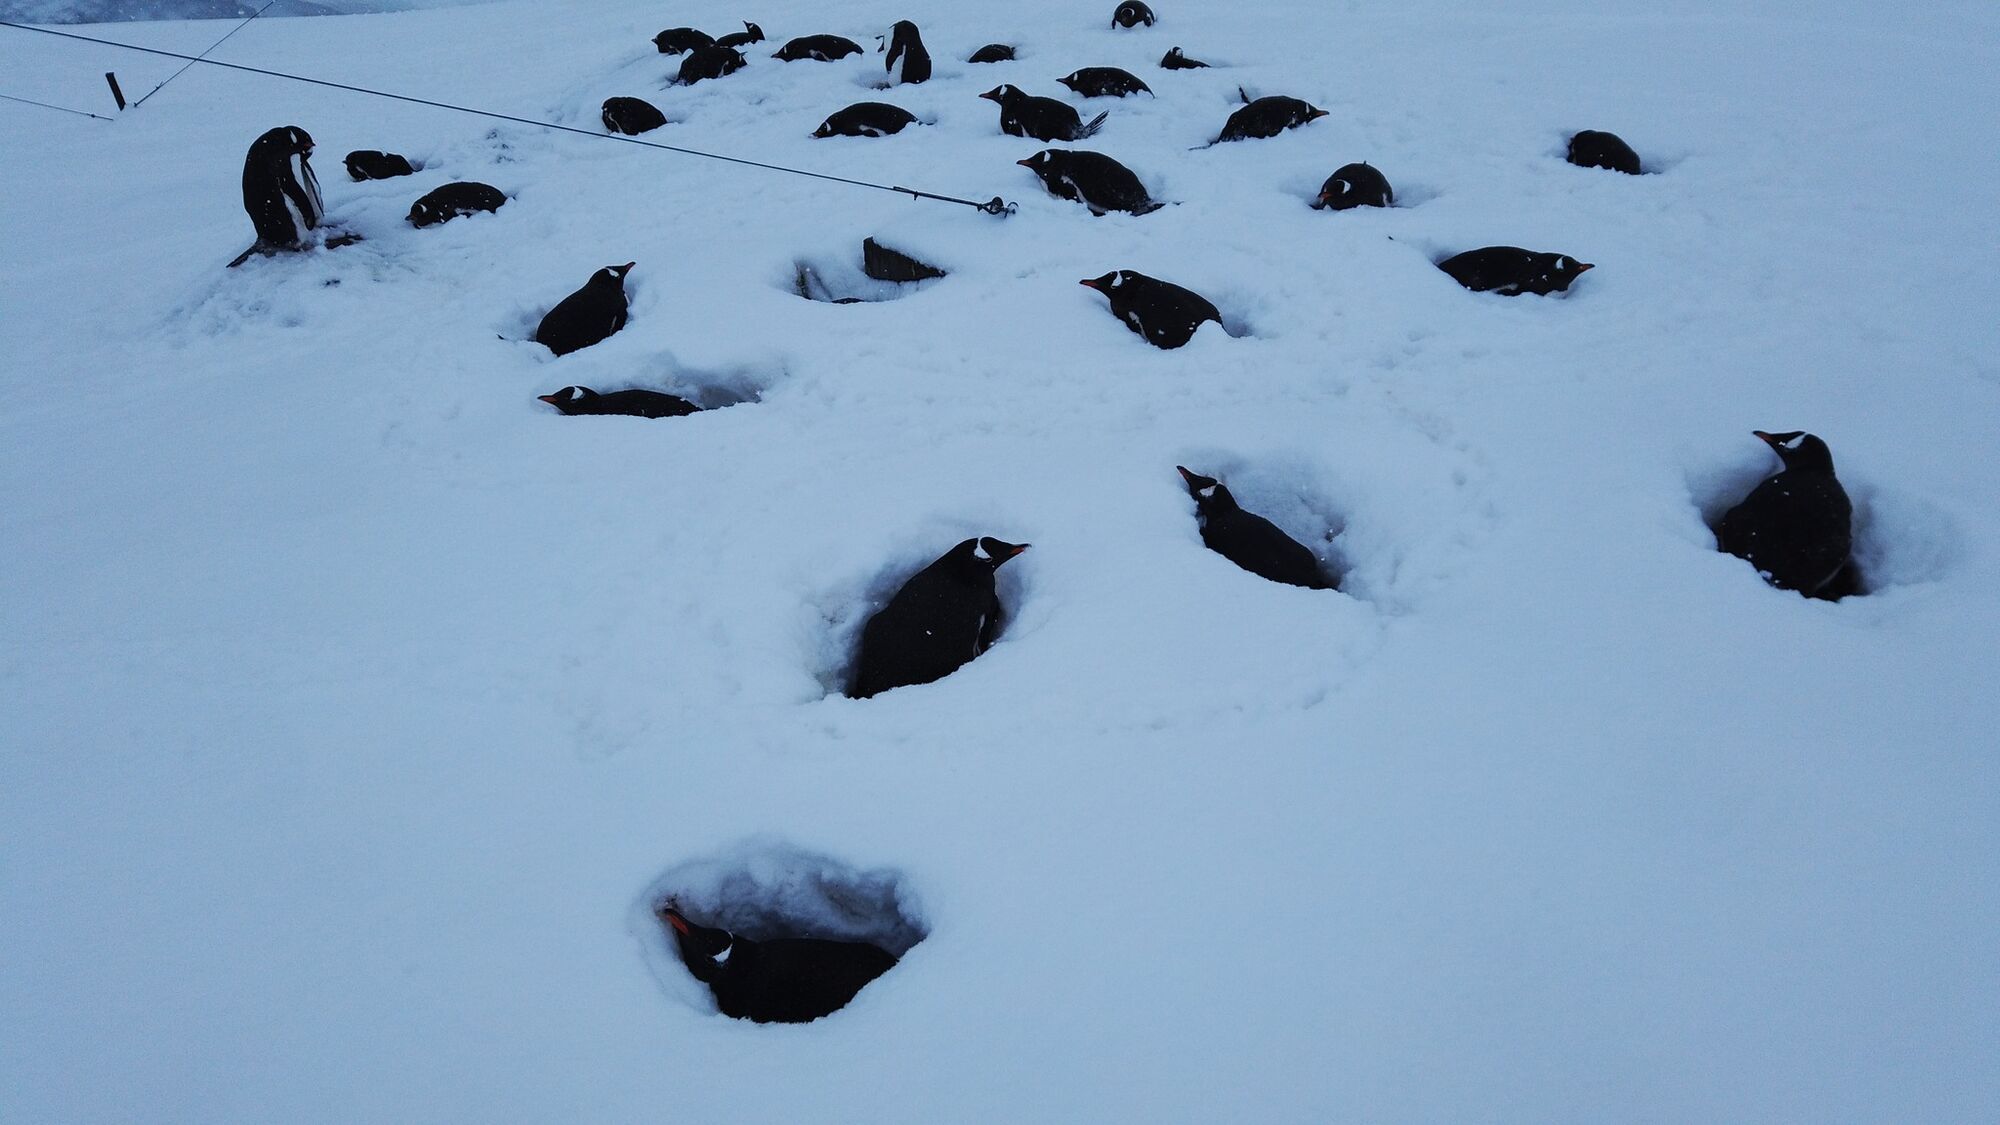 Метеорологи зафиксировали рекордный уровень снега возле станции "Академик Вернадский"